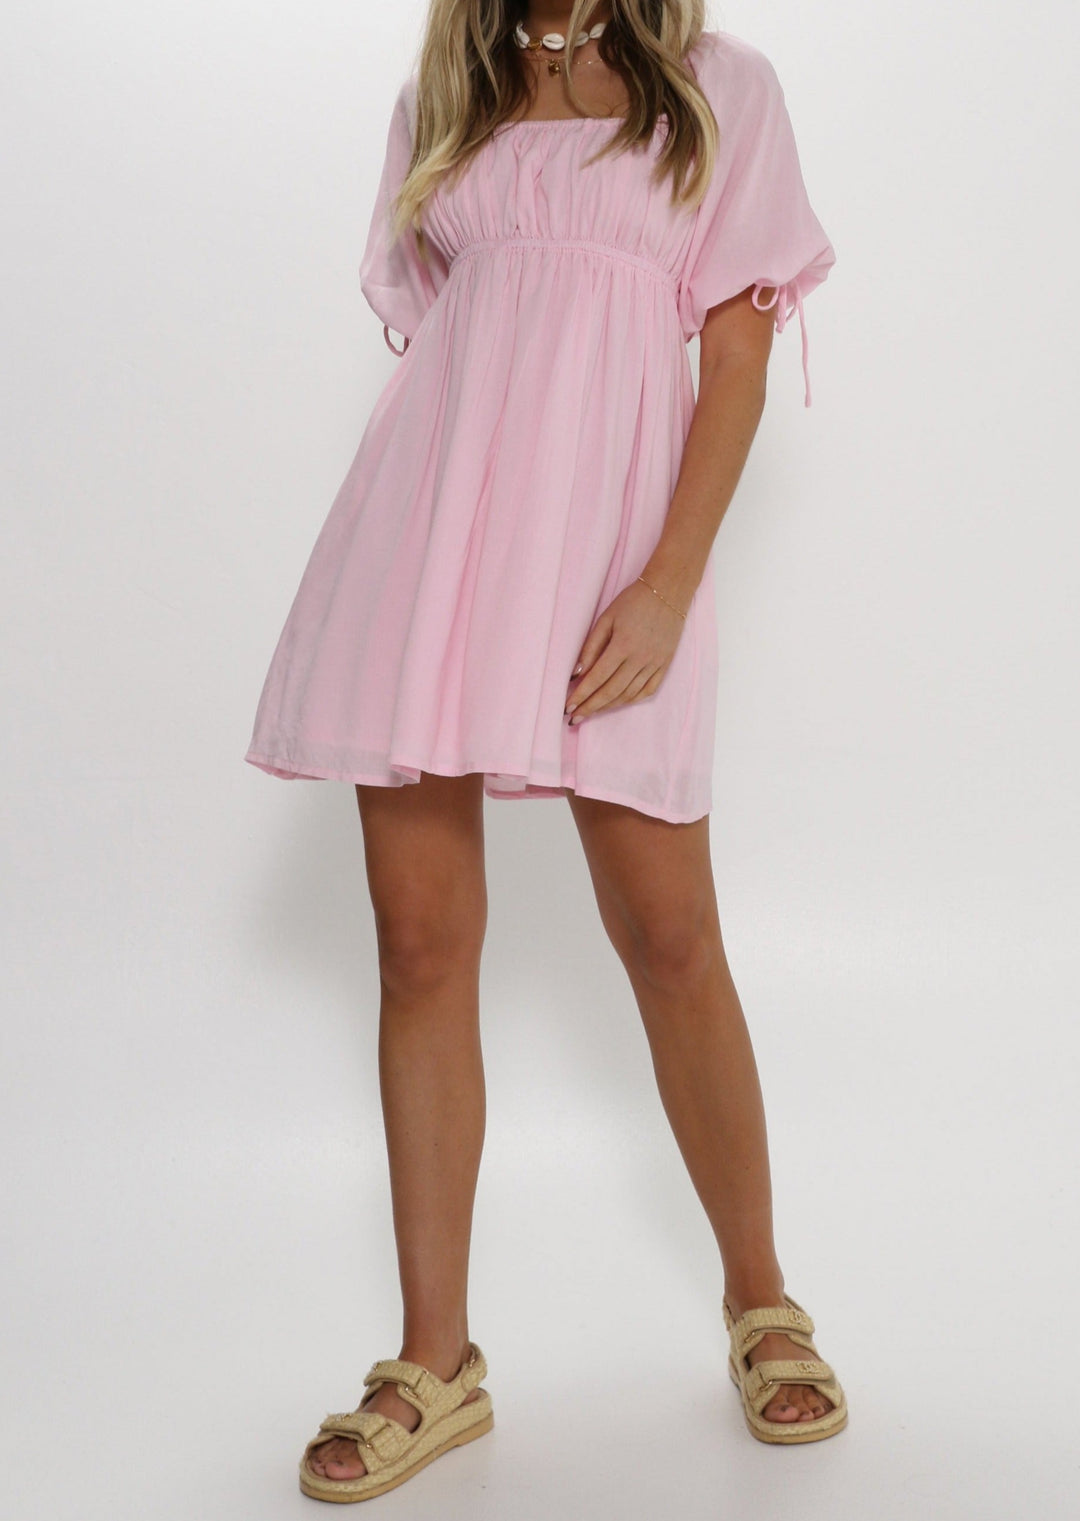 Lianna Pink Mini Dress